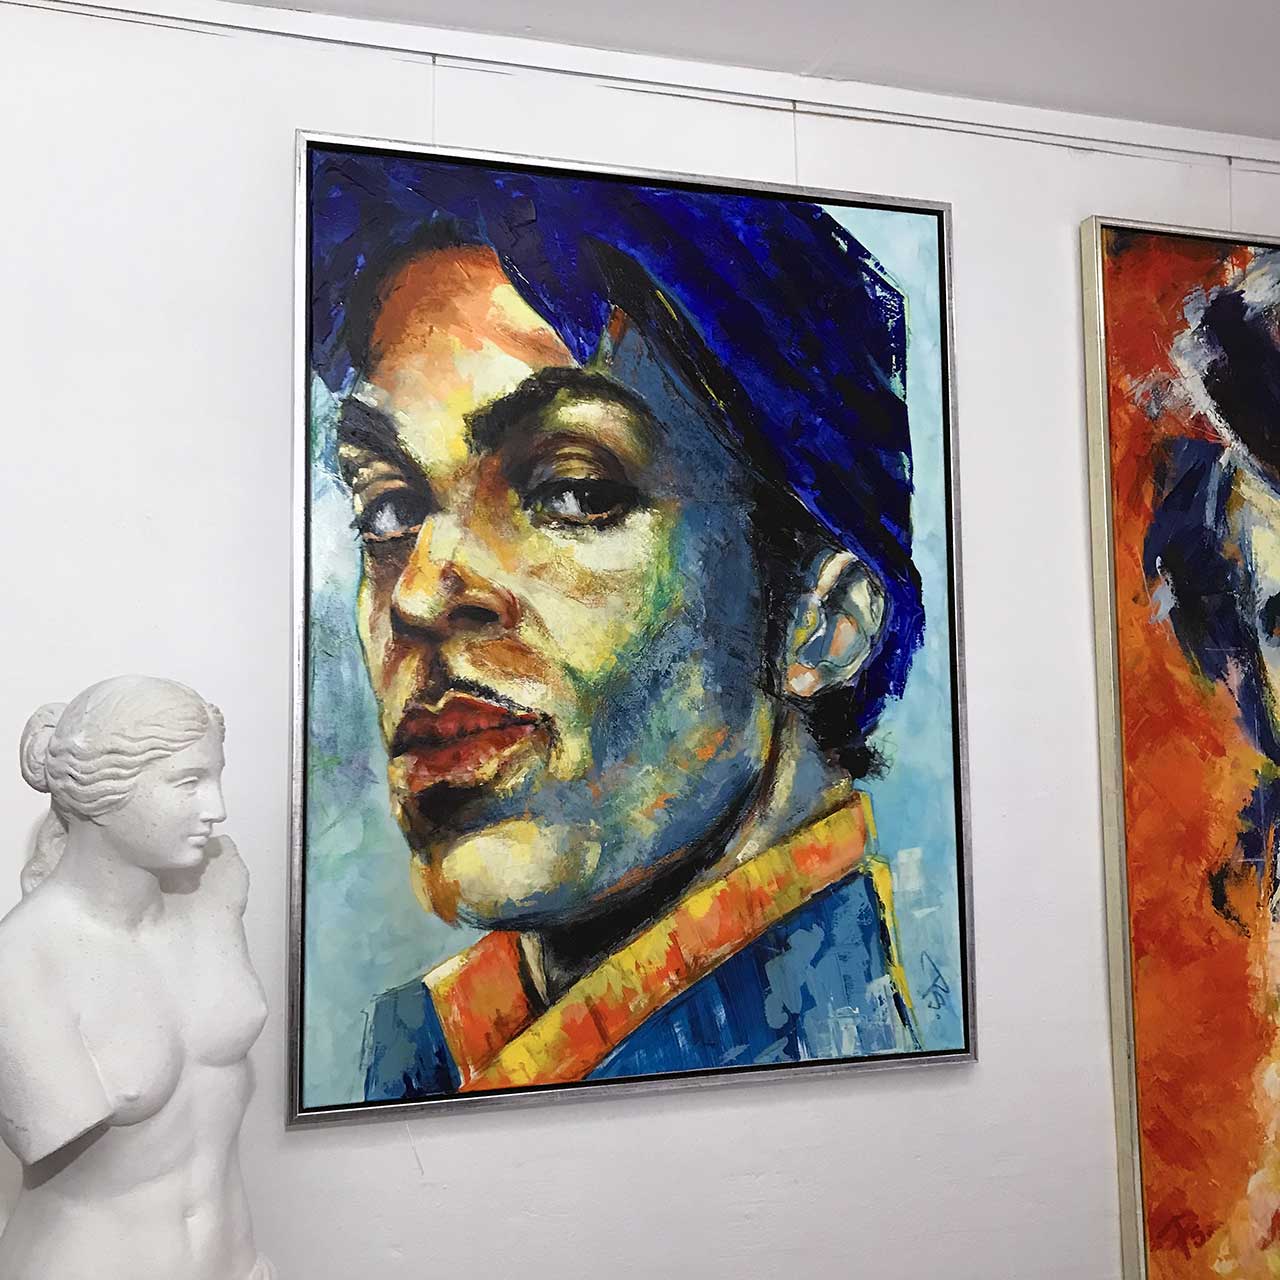 Portrætmaleri af musik ikonet Prince. Format: 90 x 120 cm. Teknikken er mixed media. Malet af portrætmaler Peter Simonsen i 2020